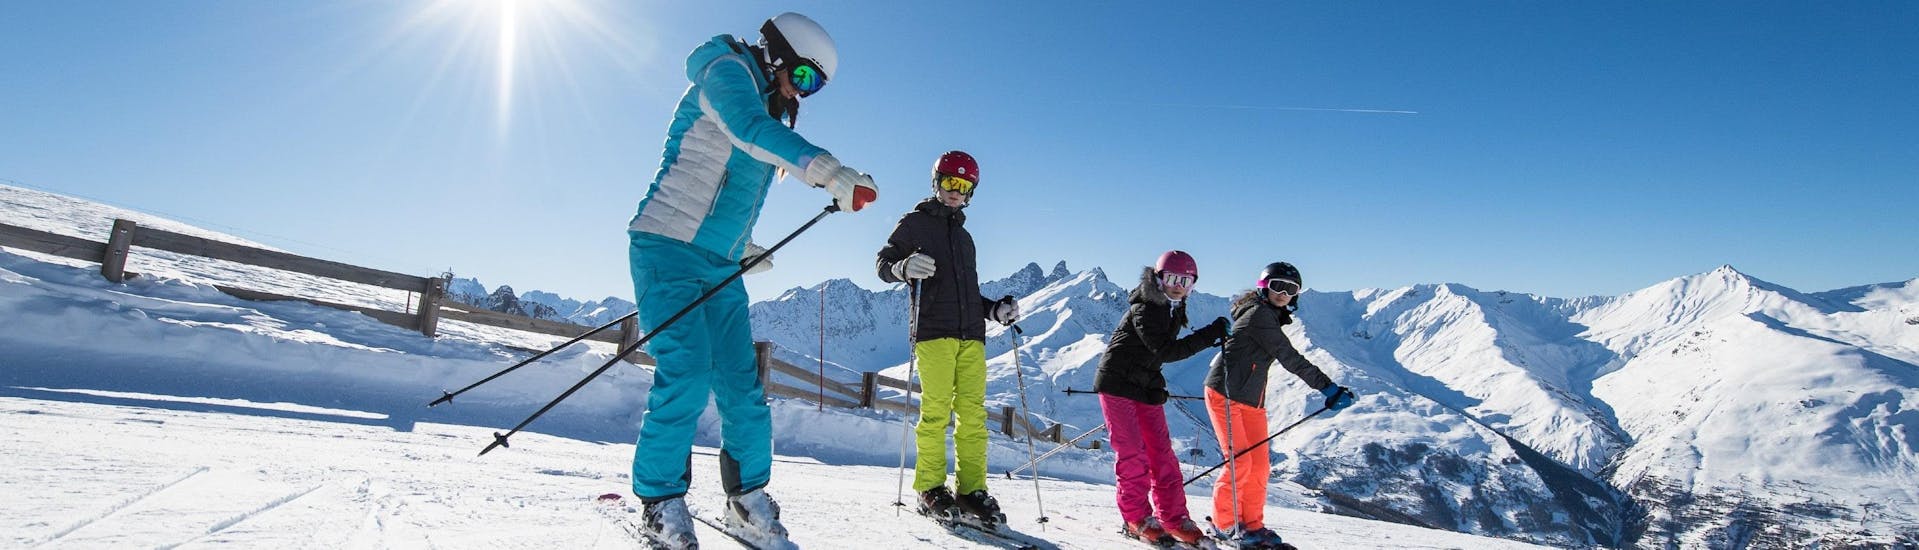 Un moniteur de ski de l'école de ski ESI Alpe d'Huez - European Ski School montre aux participants les bons gestes pendant leur Cours de ski Enfants (6-12 ans) pour Tous niveaux.